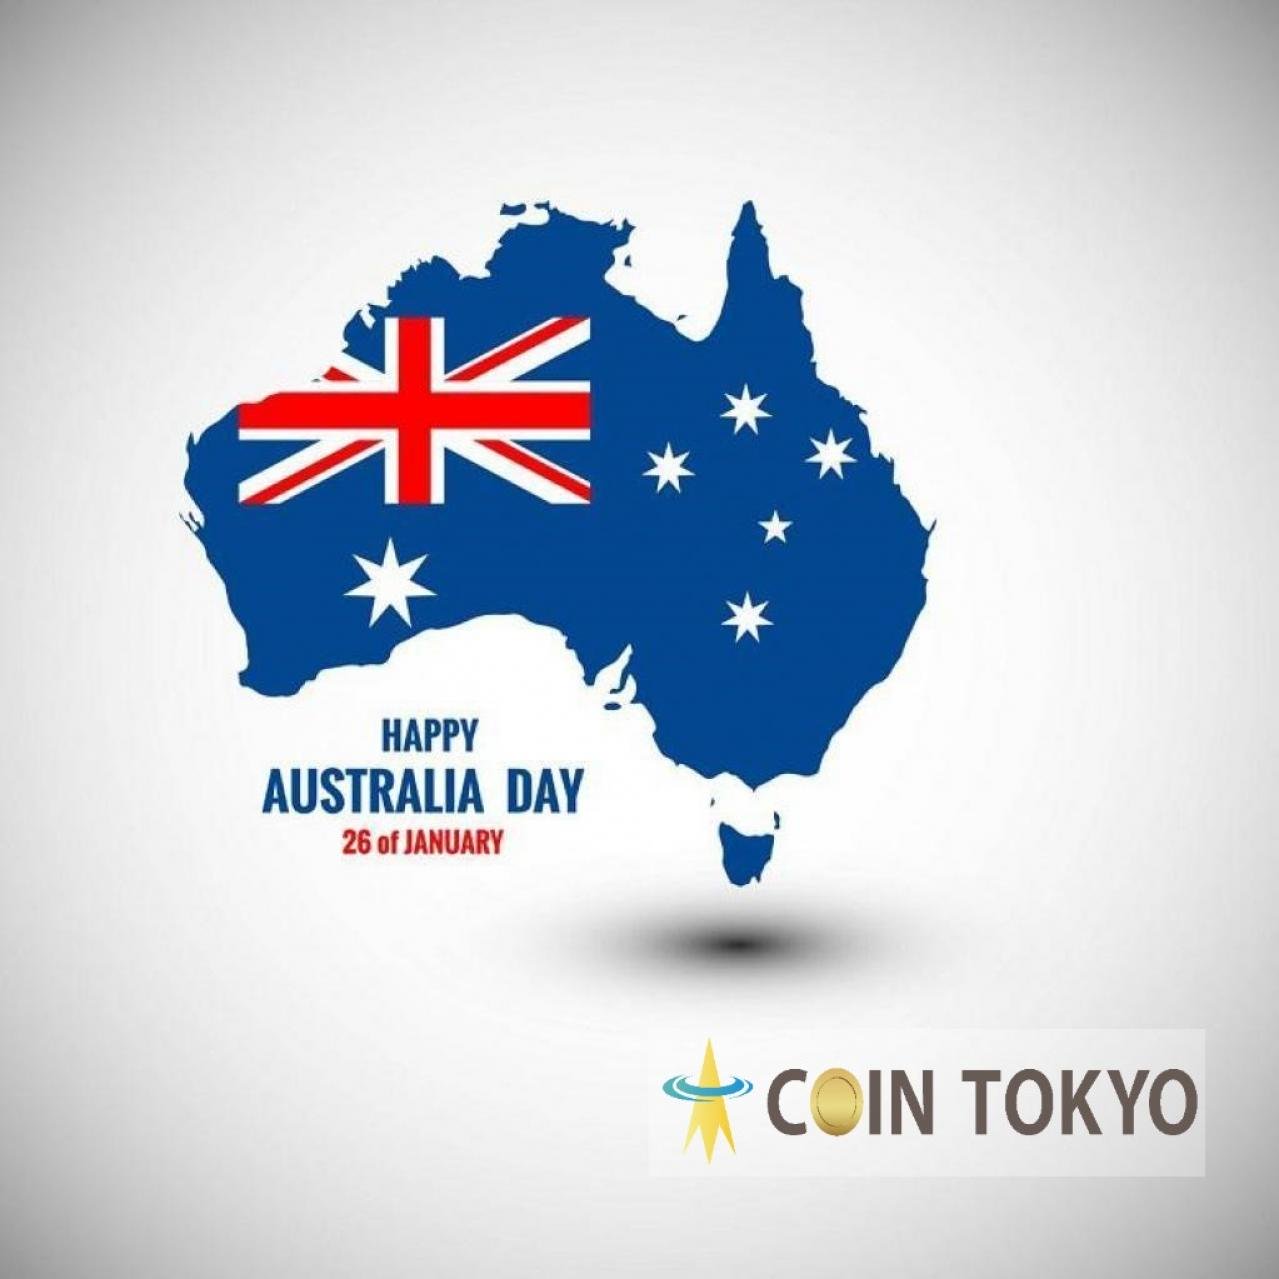 澳大利亚上市公司成立比特币私人基金，开始为合格投资者+虚拟货币新闻网站Coin Tokyo进行采购